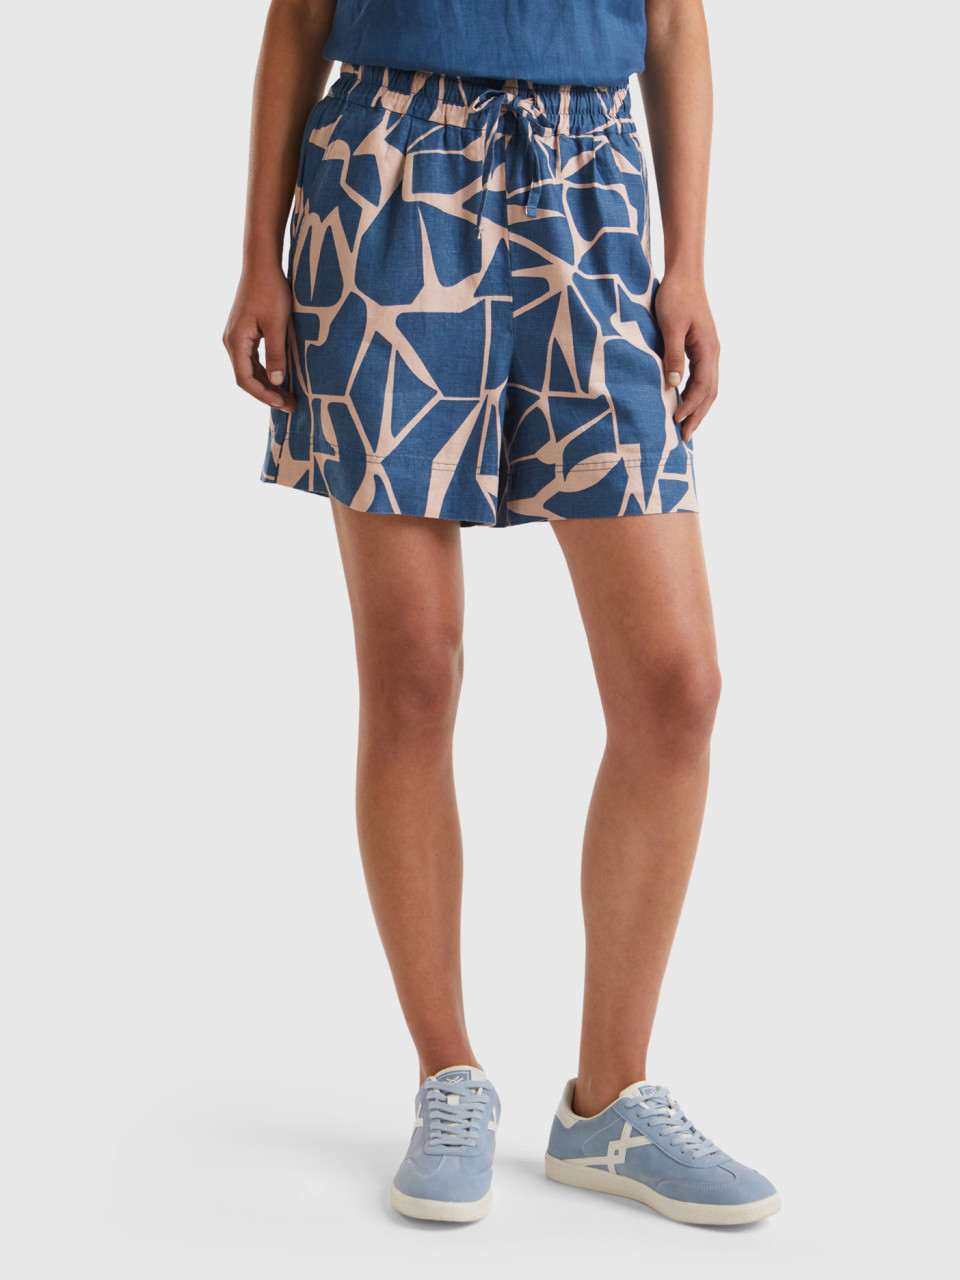 Benetton, Printed Linen Shorts, Air Force Blue, Women